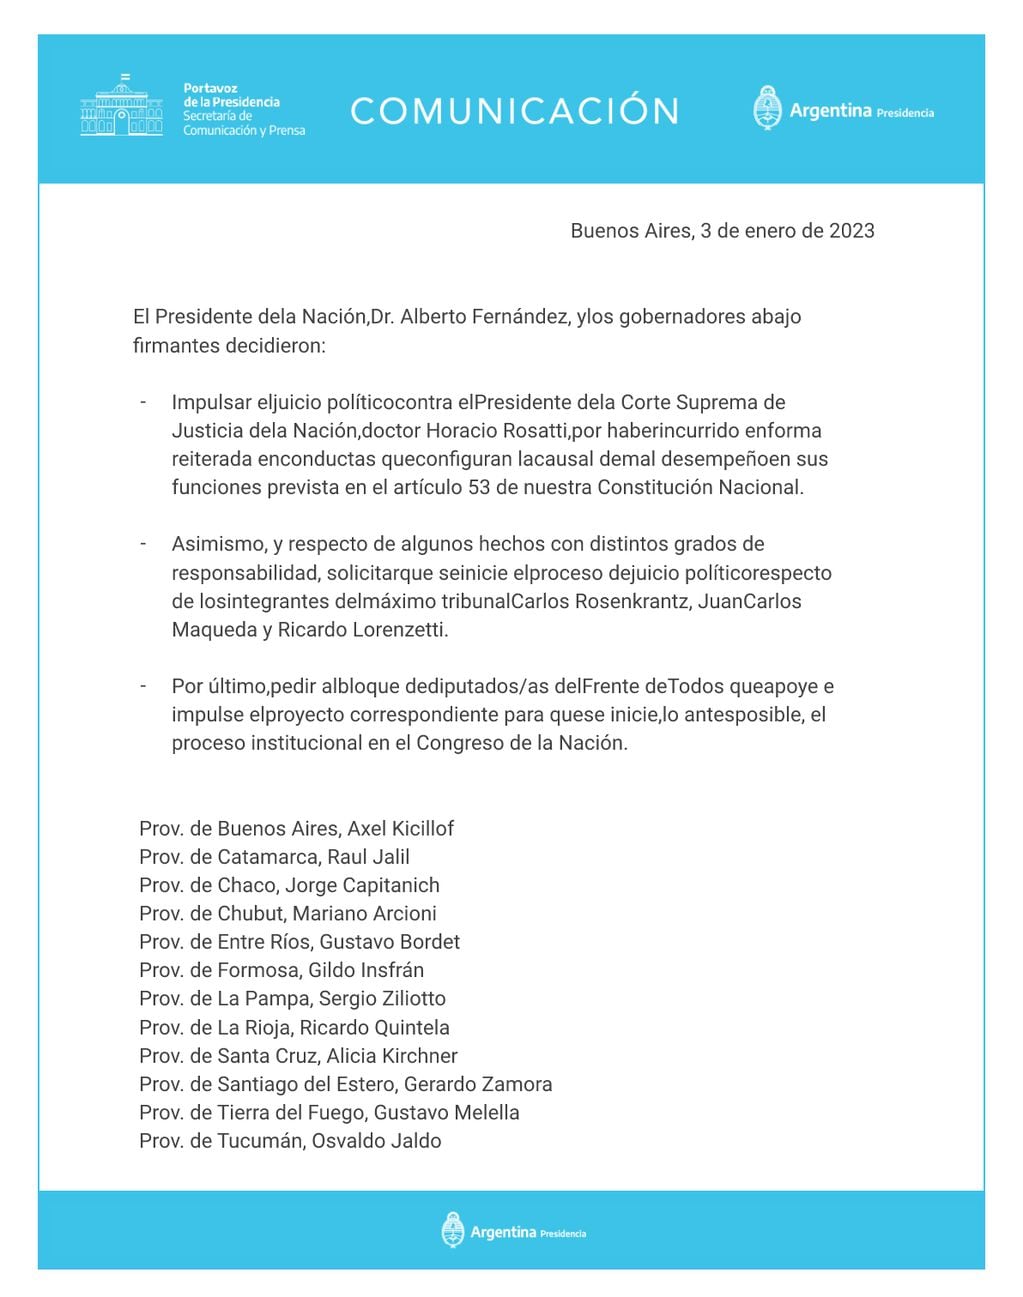 El comunicado de Presidencia sobre el pedido de juicio político al presidente de la Corte Suprema, Horacio Rosatti.